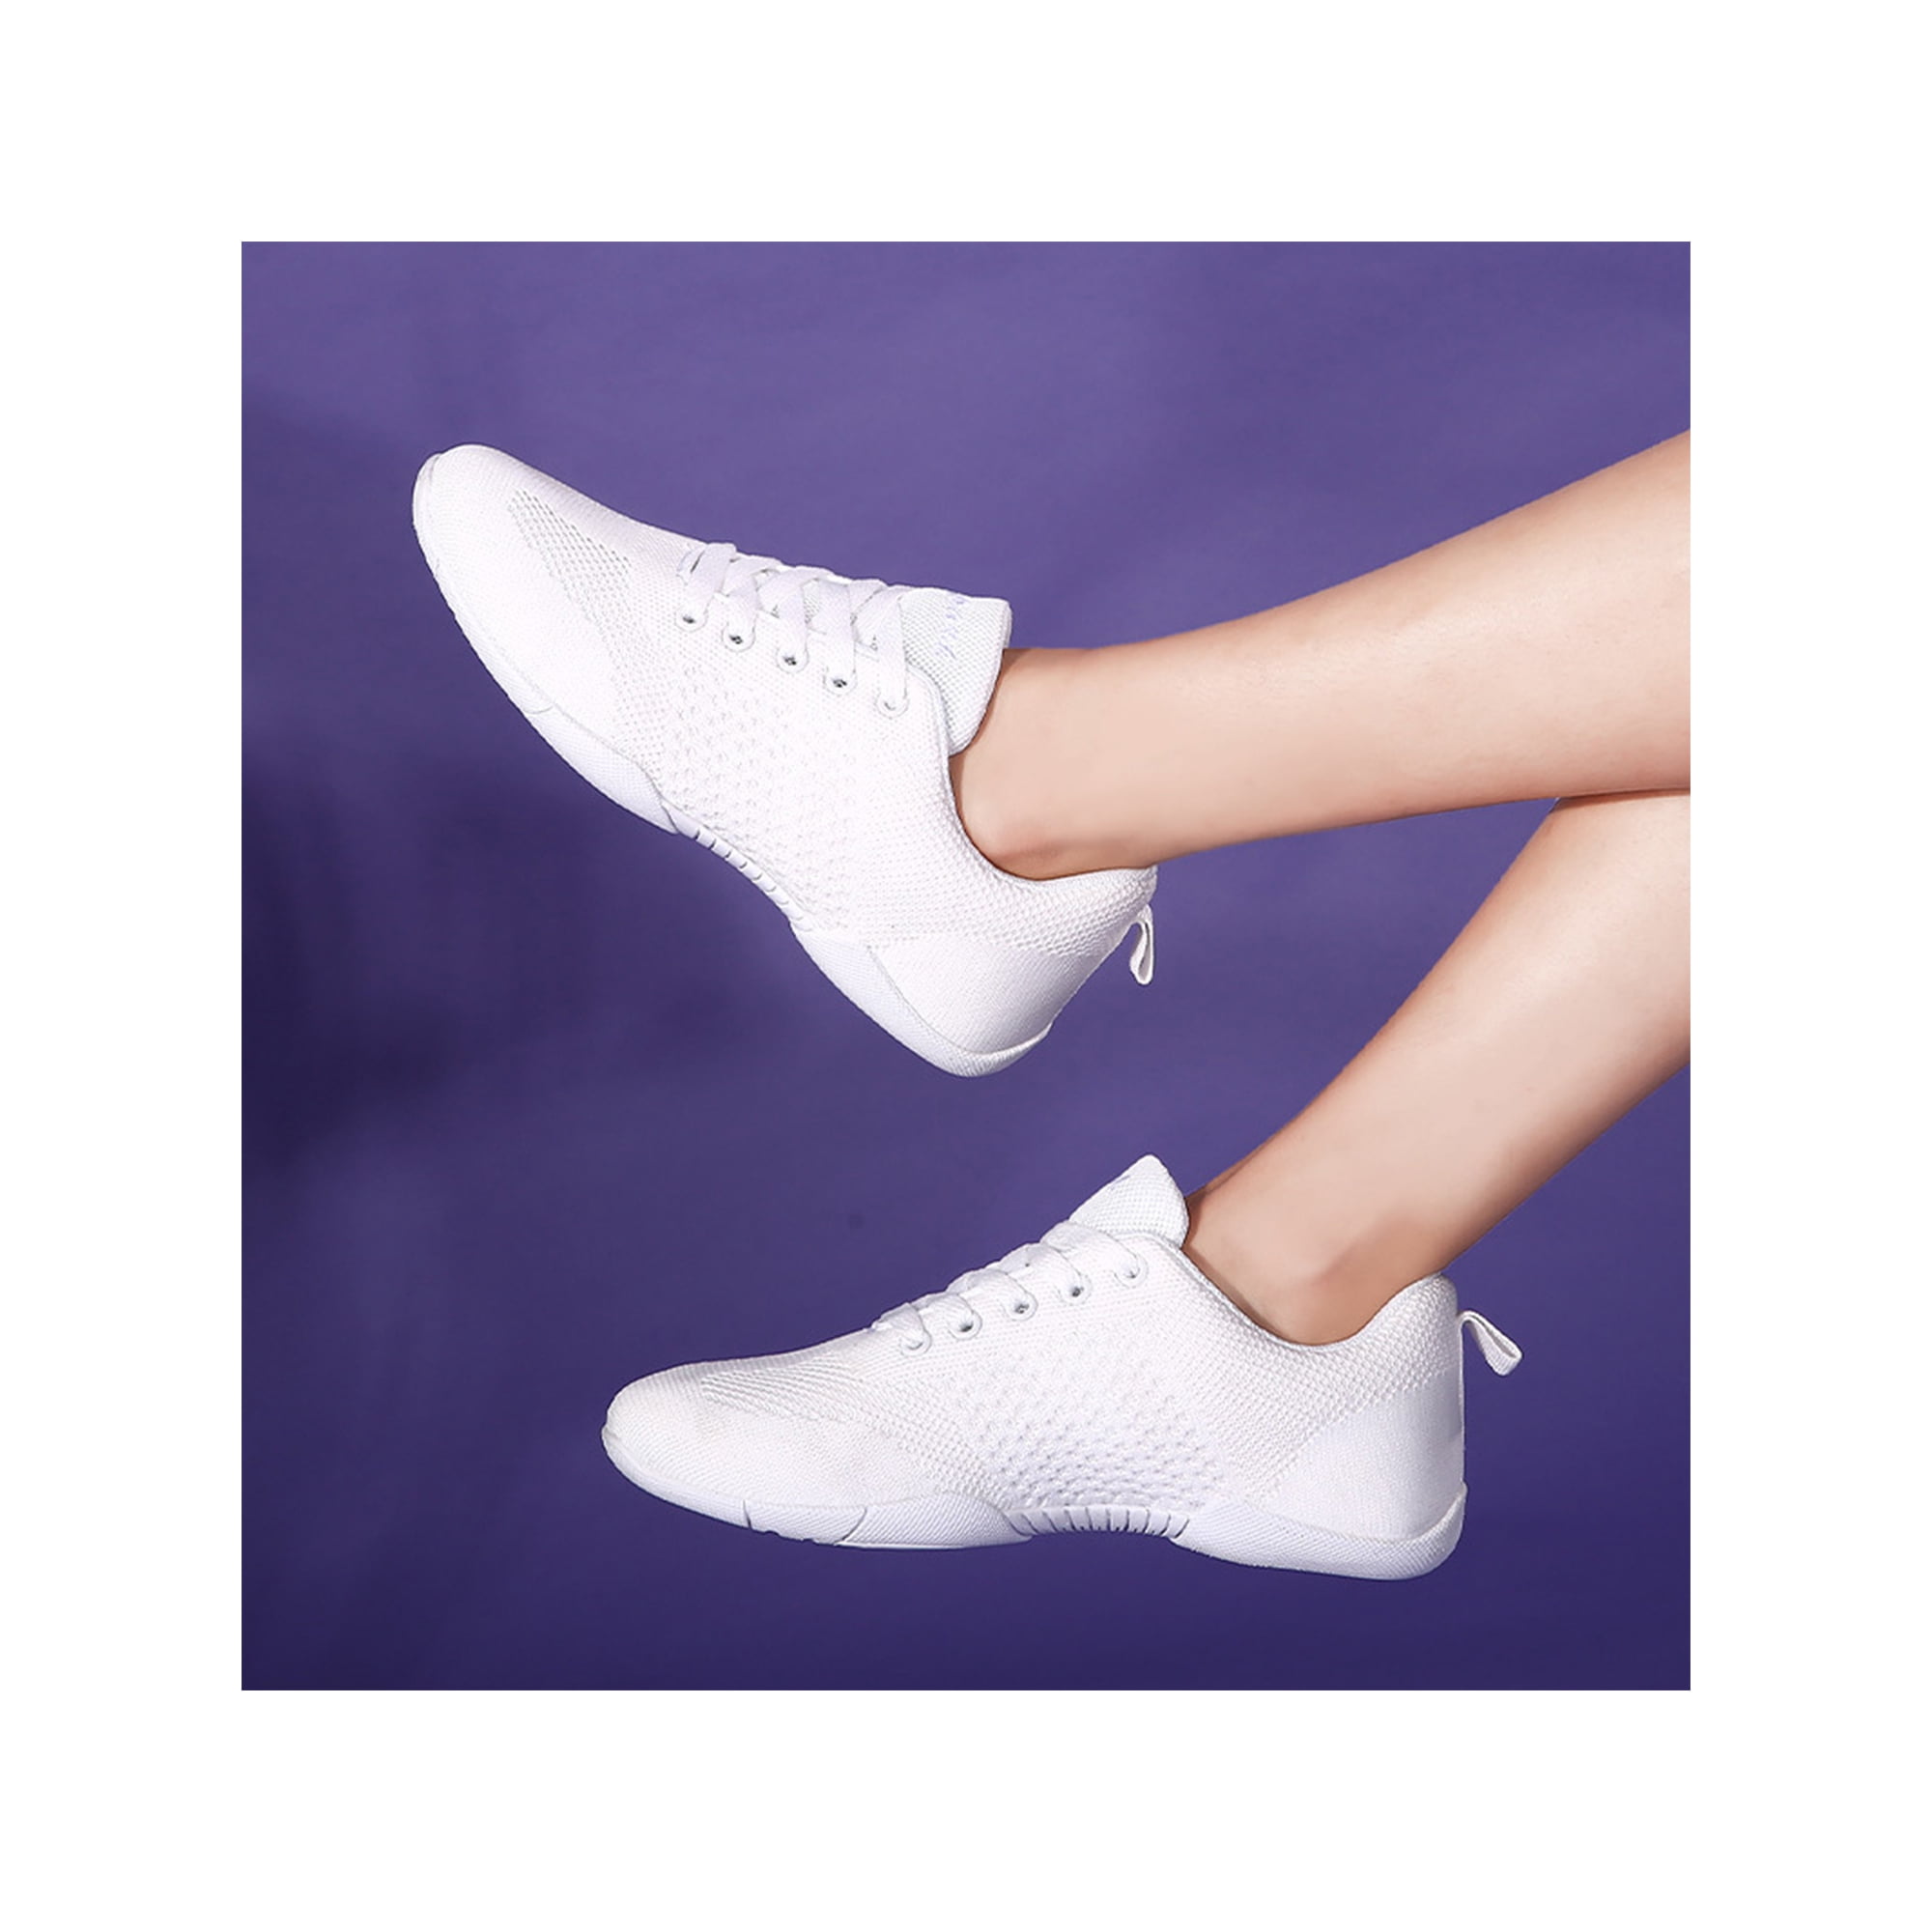 Les femmes qui courtisent réconfortent la chaussure de cheerleading danse  des baskets de danse en dentelle respirante Blanc 13c